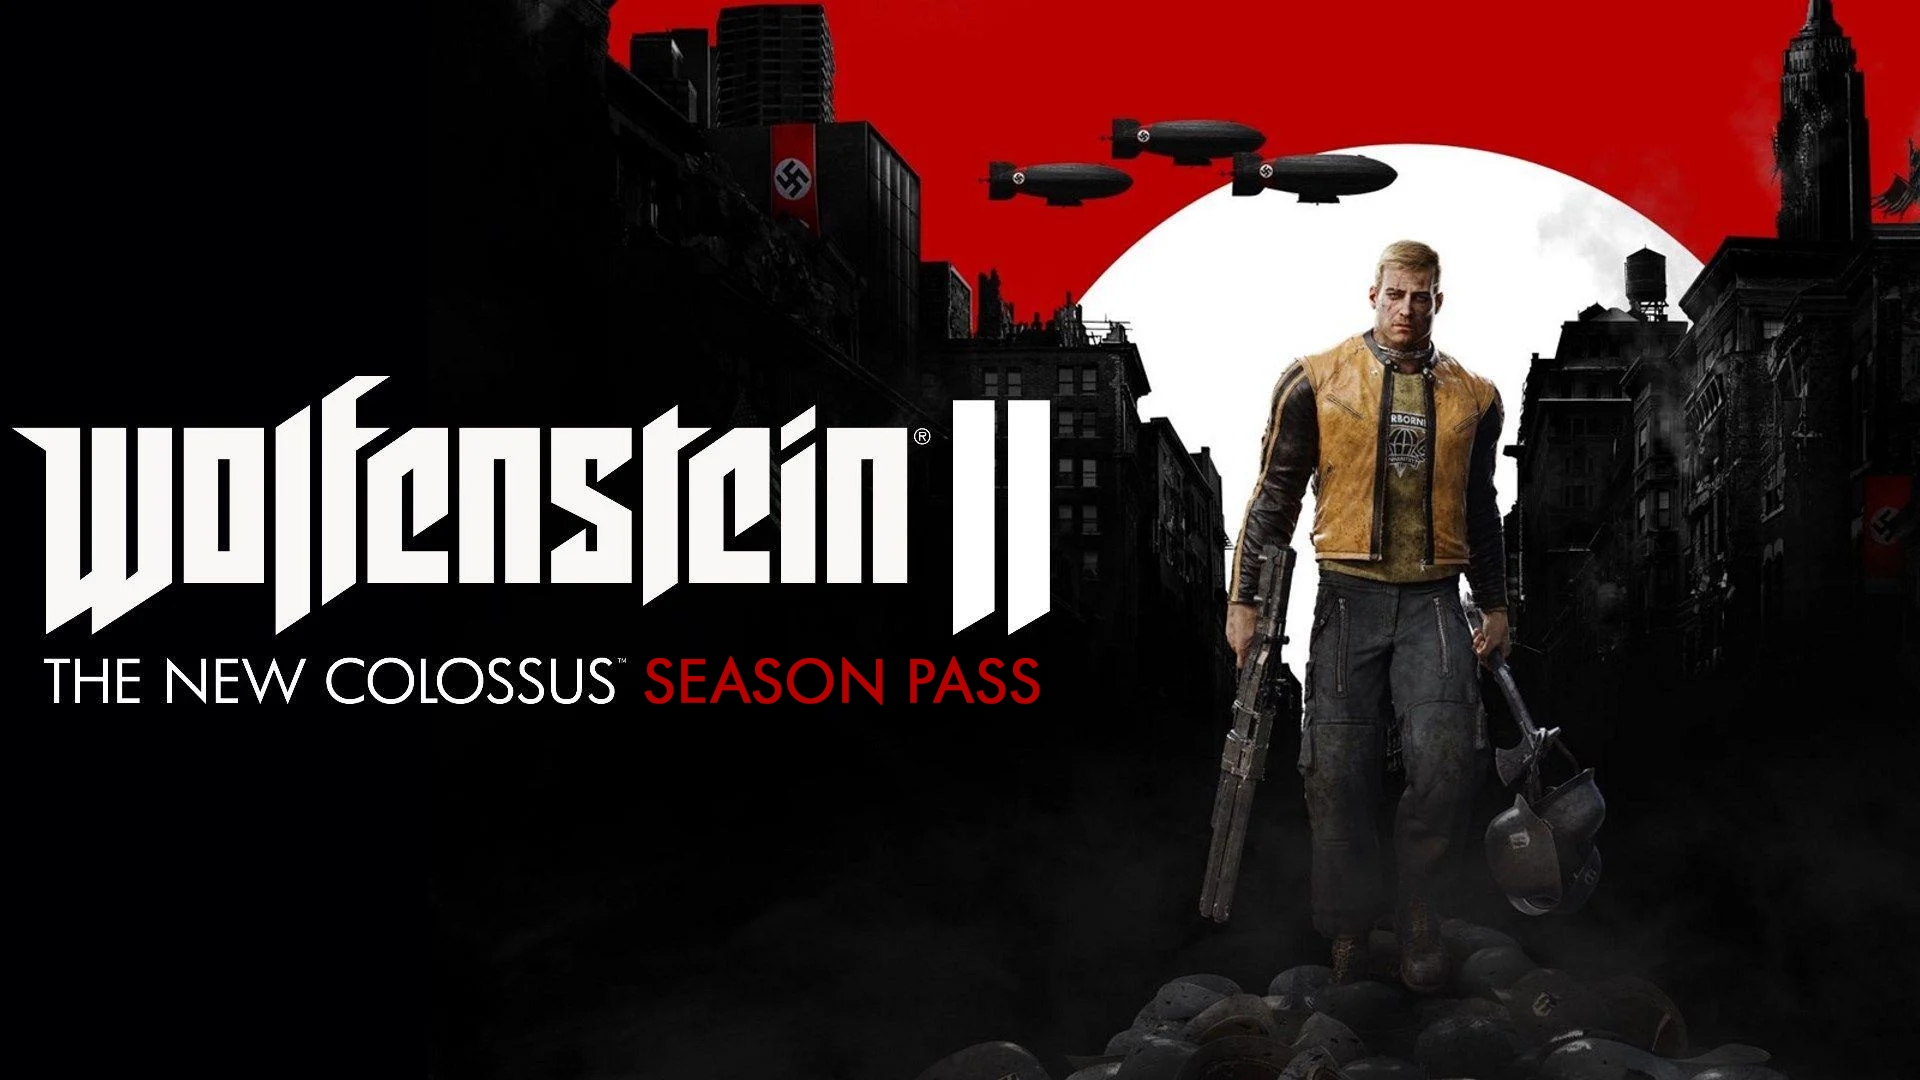 Wolfenstein 1 the new colossus